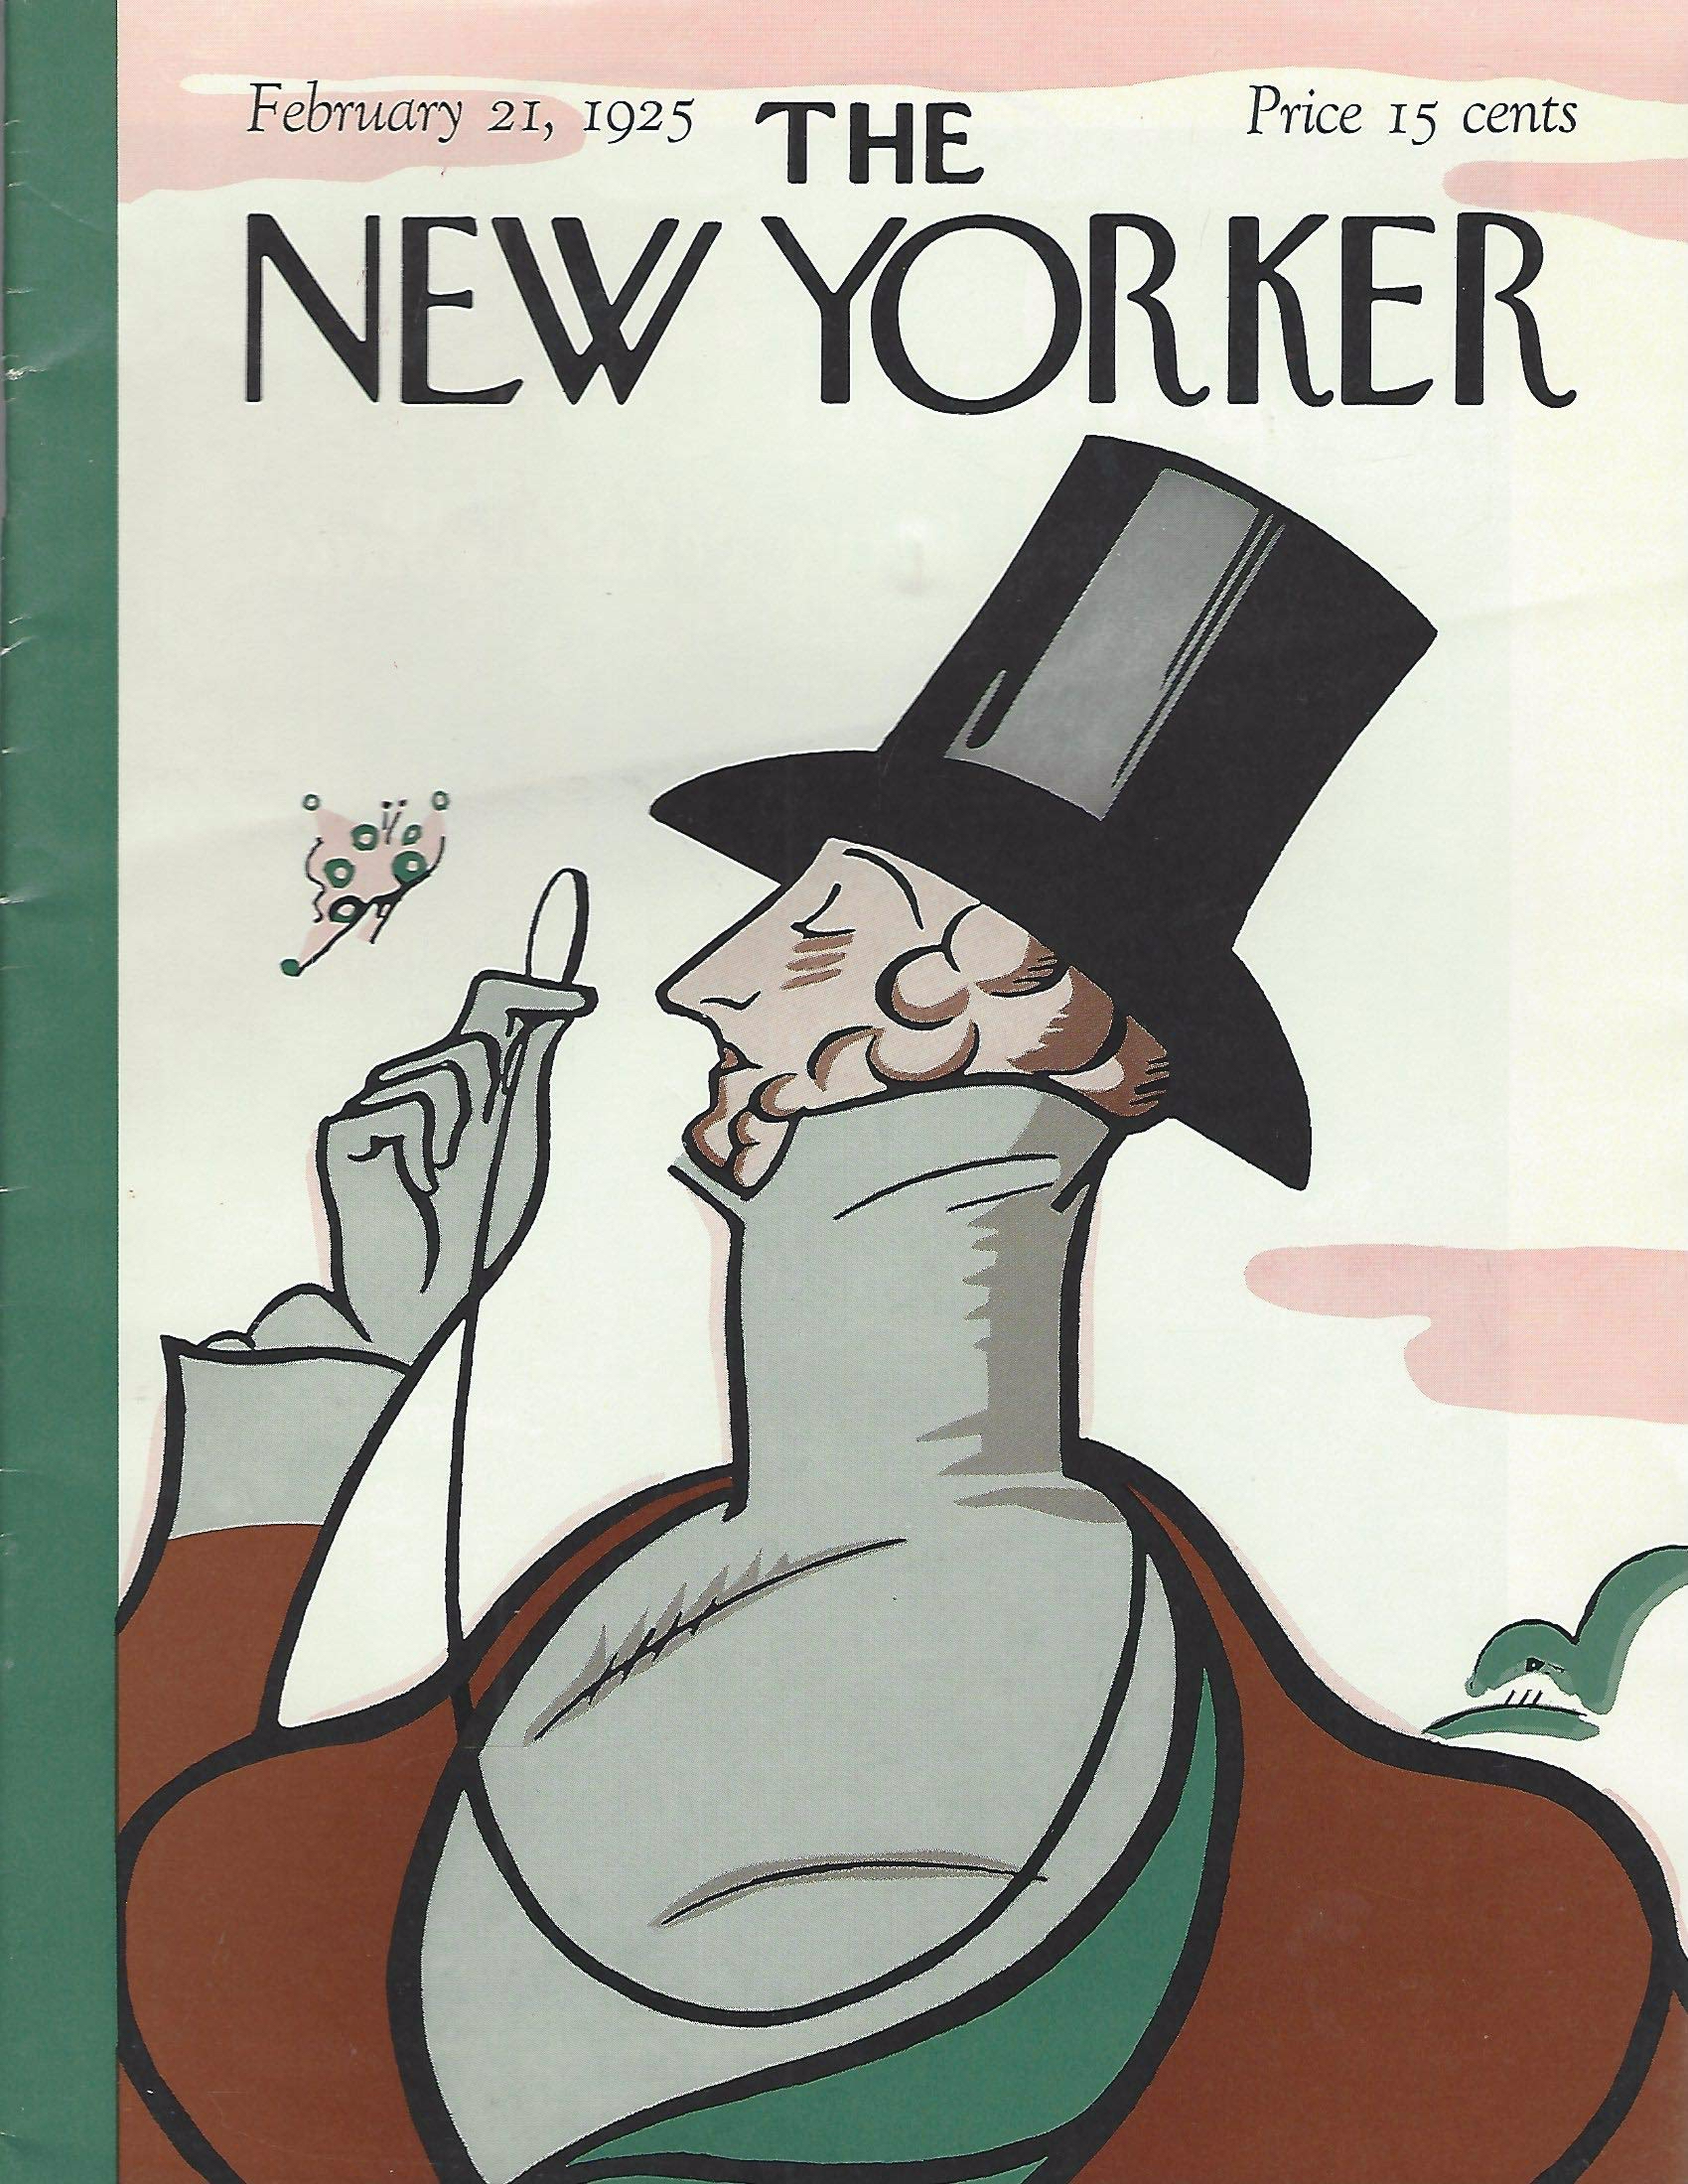 Revista The New Yorker expôs miséria da ditadura portuguesa nos anos 1950